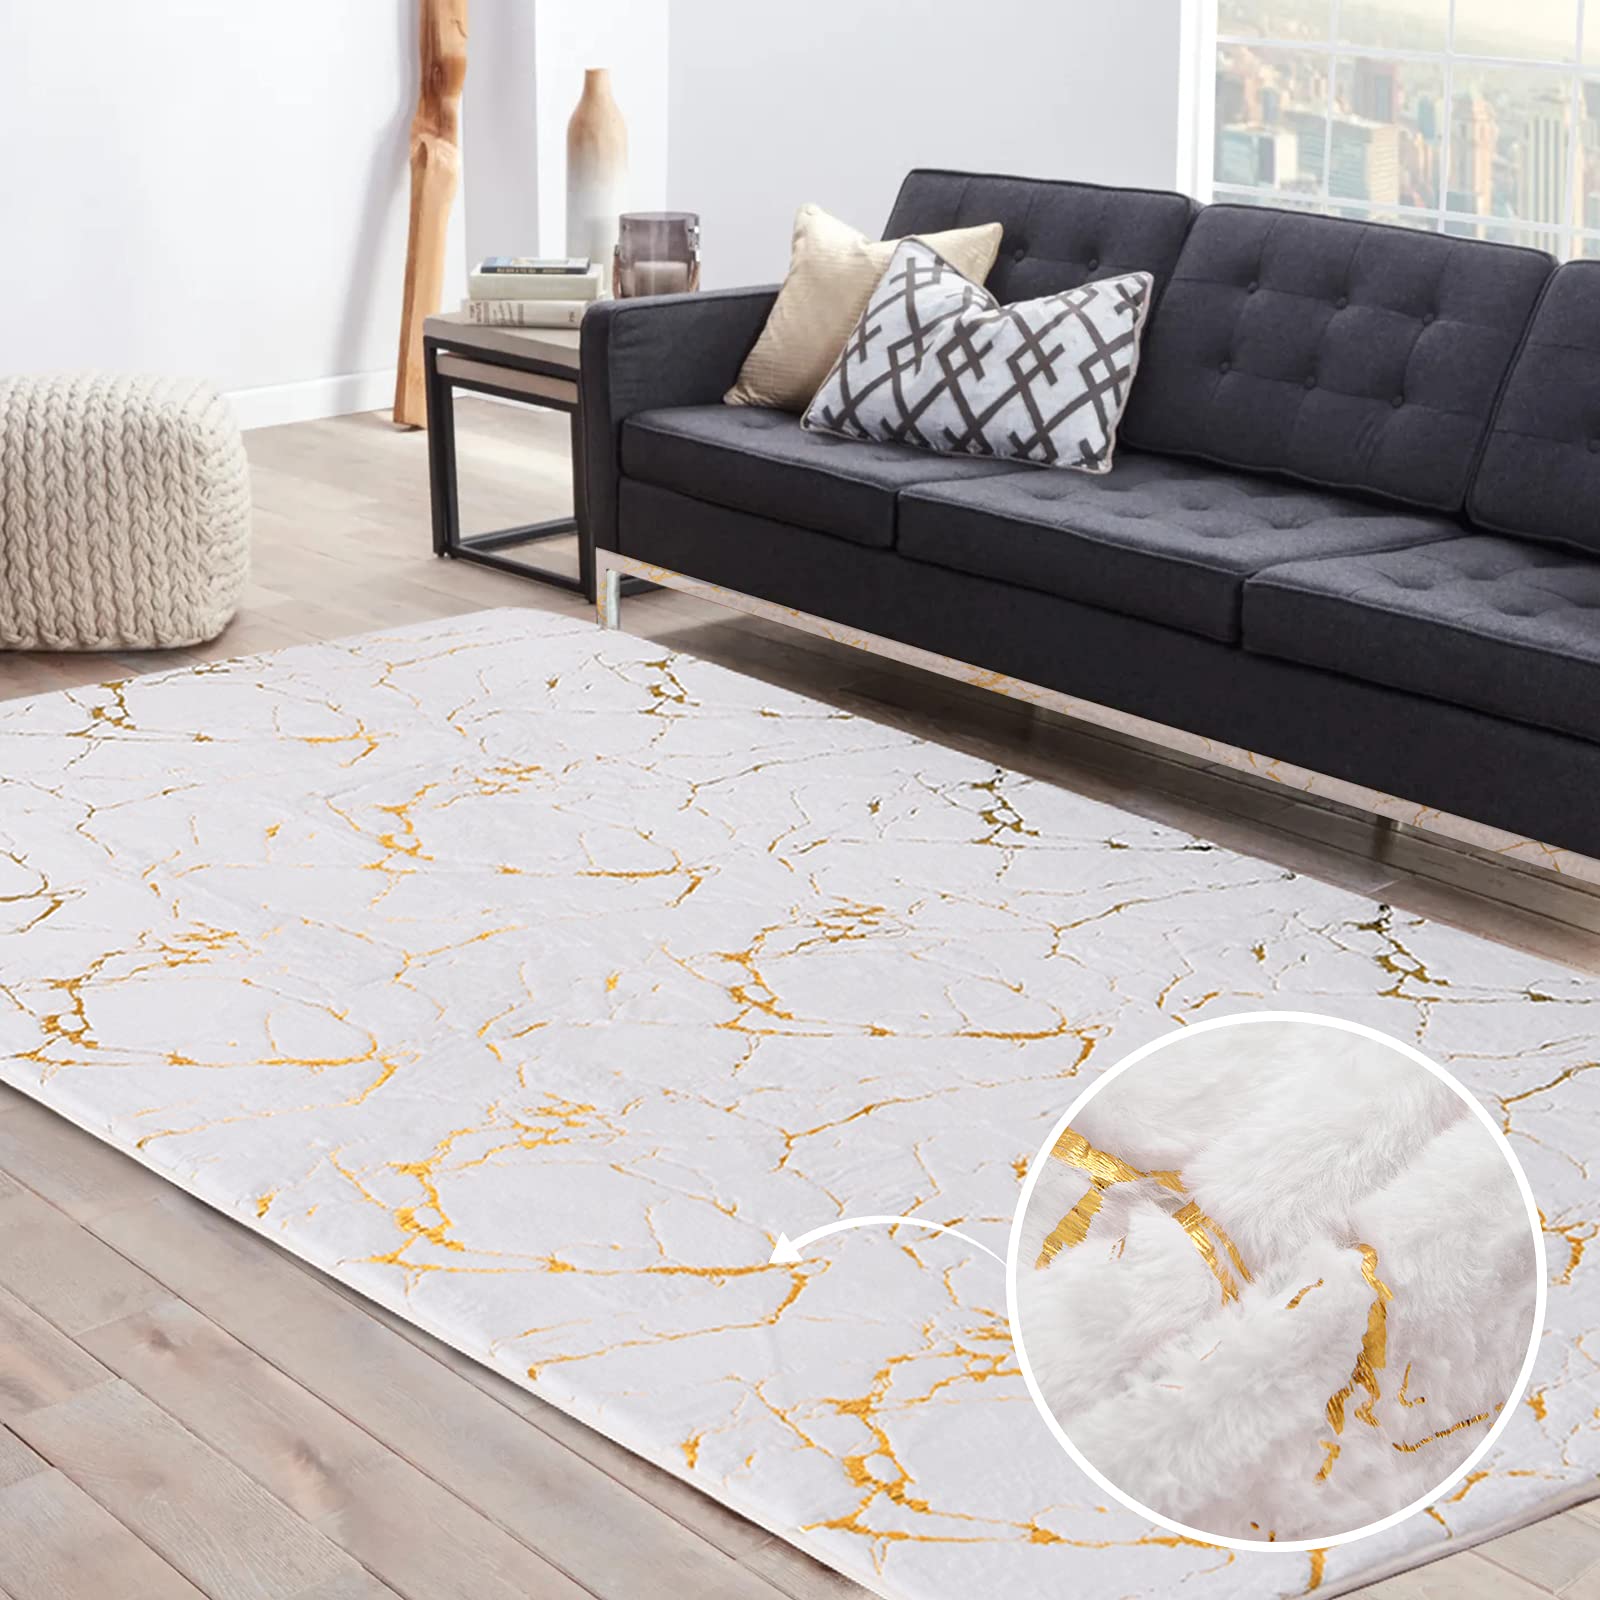 Doux métallisé coloré abstrait tapis tapis anti-dérapant moelleux rectangulaire en peluche velours maison décoratif tapis jeter tapis Image en vedette